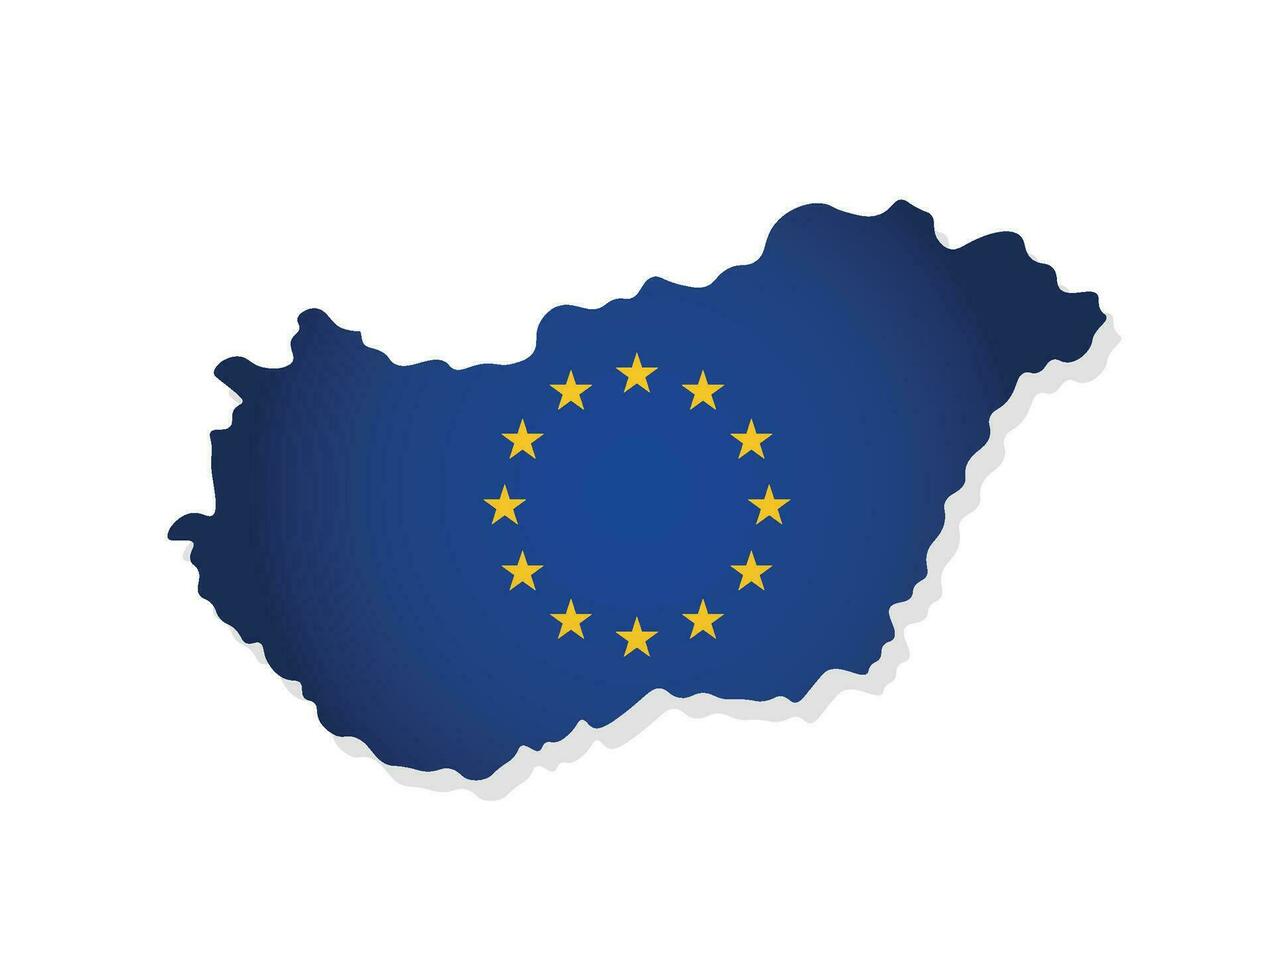 vektor begrepp med isolerat Karta av medlem av europeisk union - Ungern. modern illustration dekorerad förbi de eu flagga med gul stjärnor på blå bakgrund